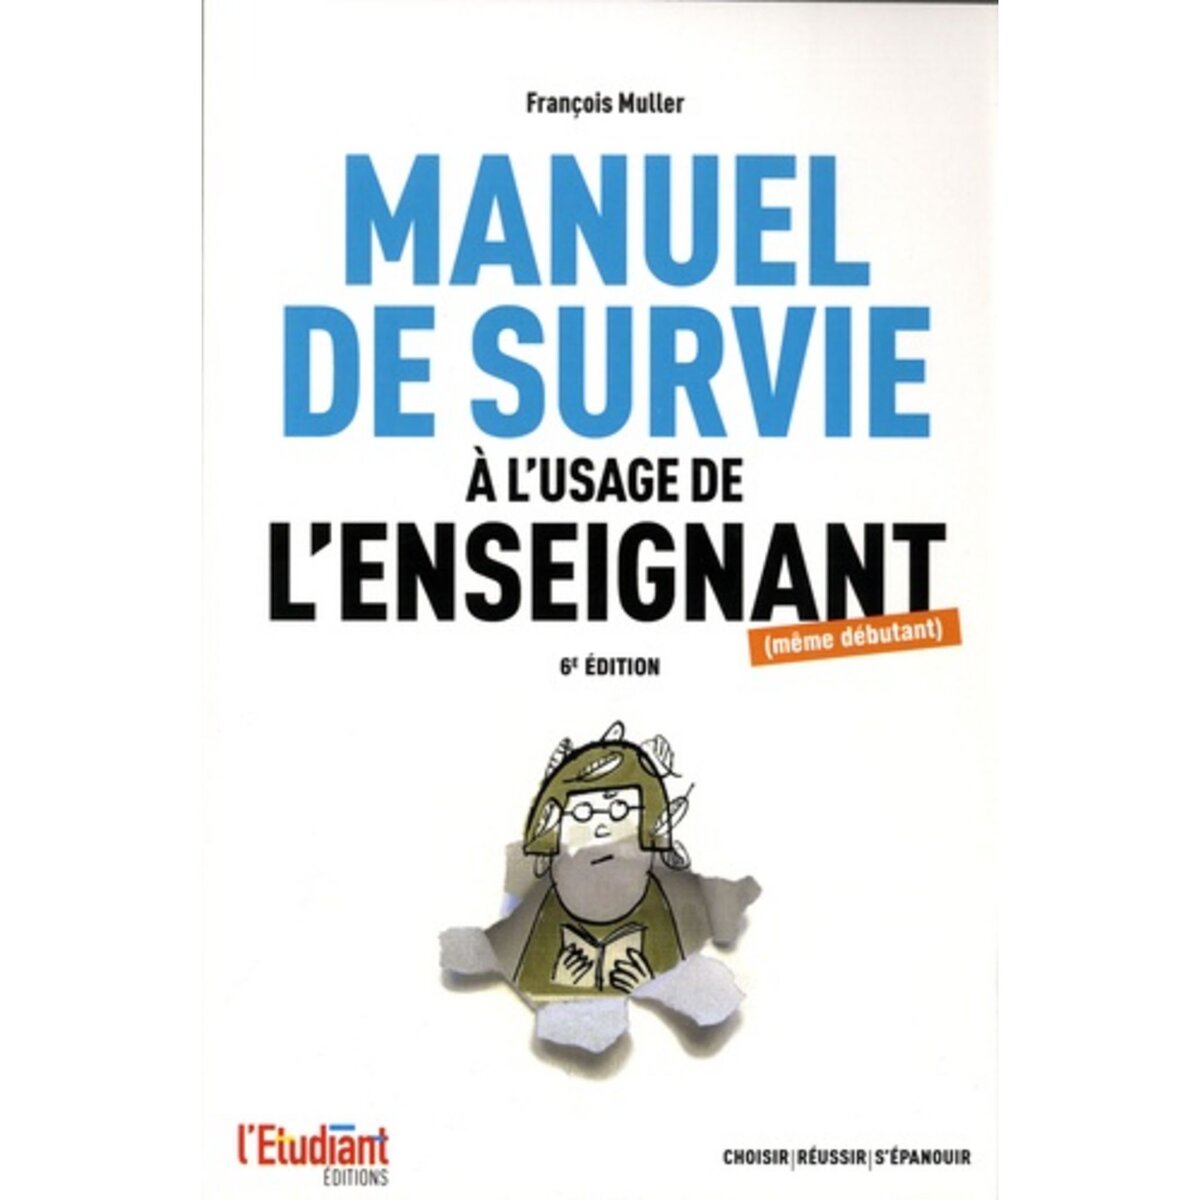  LE MANUEL DE SURVIE A L'USAGE DE L'ENSEIGNANT (MEME DEBUTANT). 6E EDITION REVUE ET AUGMENTEE, Muller François